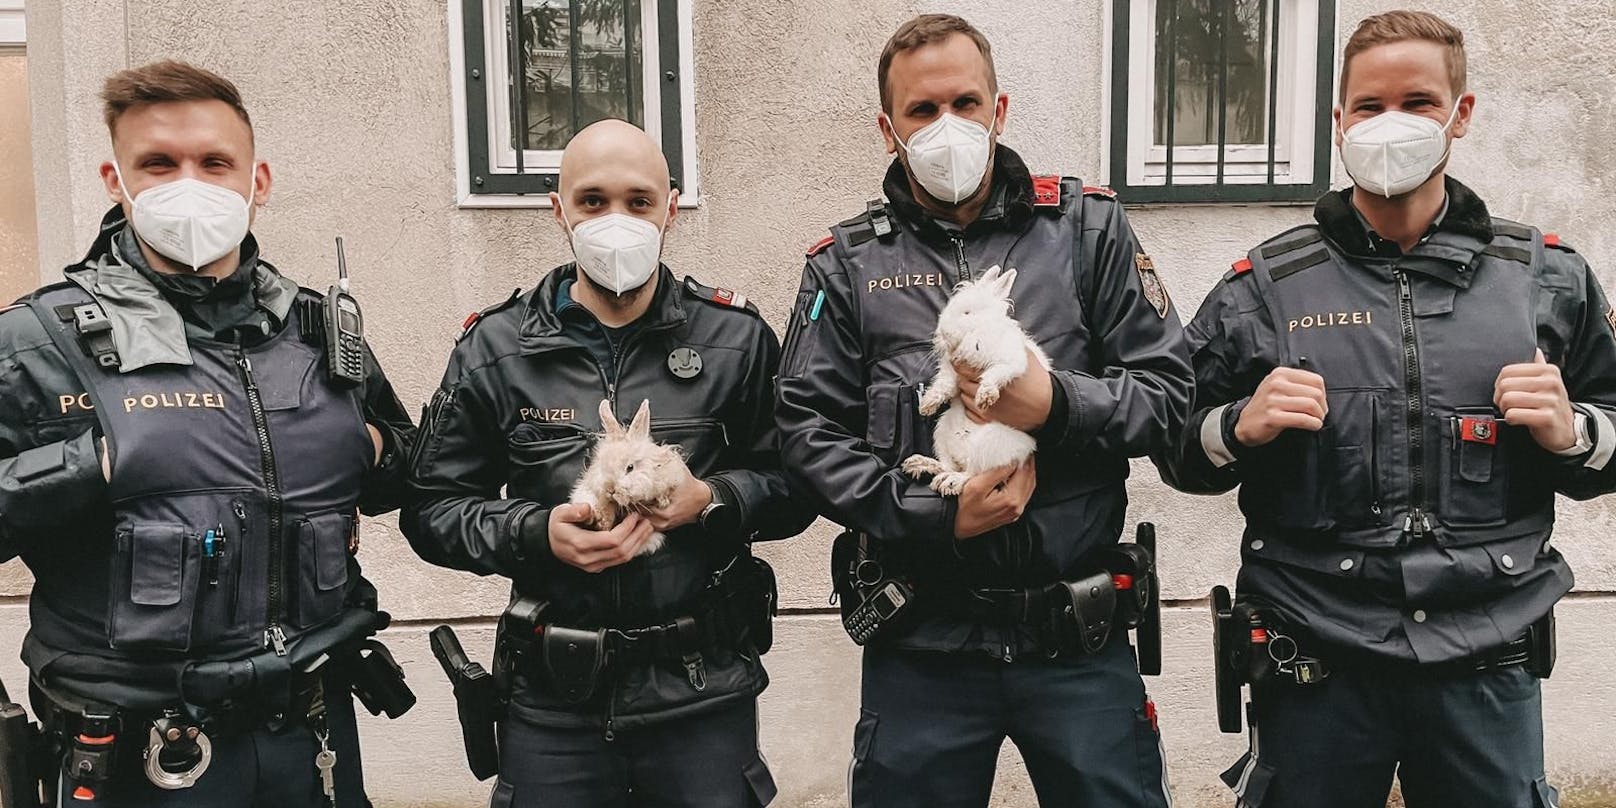 Polizisten des Stadtpolizeikommandos Favoriten mit ihrer "Beute"